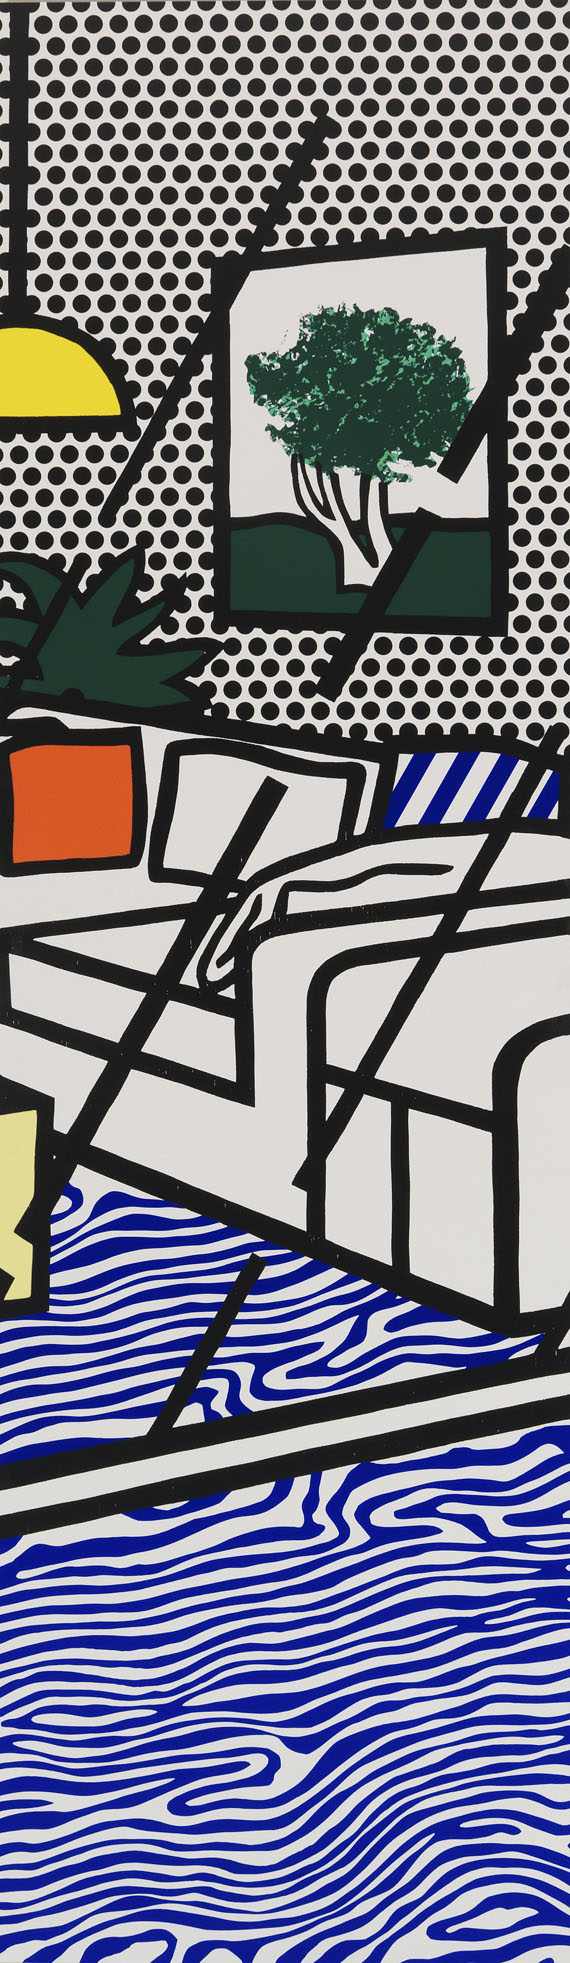 Roy Lichtenstein - Wallpaper with Blue Floor Interior - Autre image